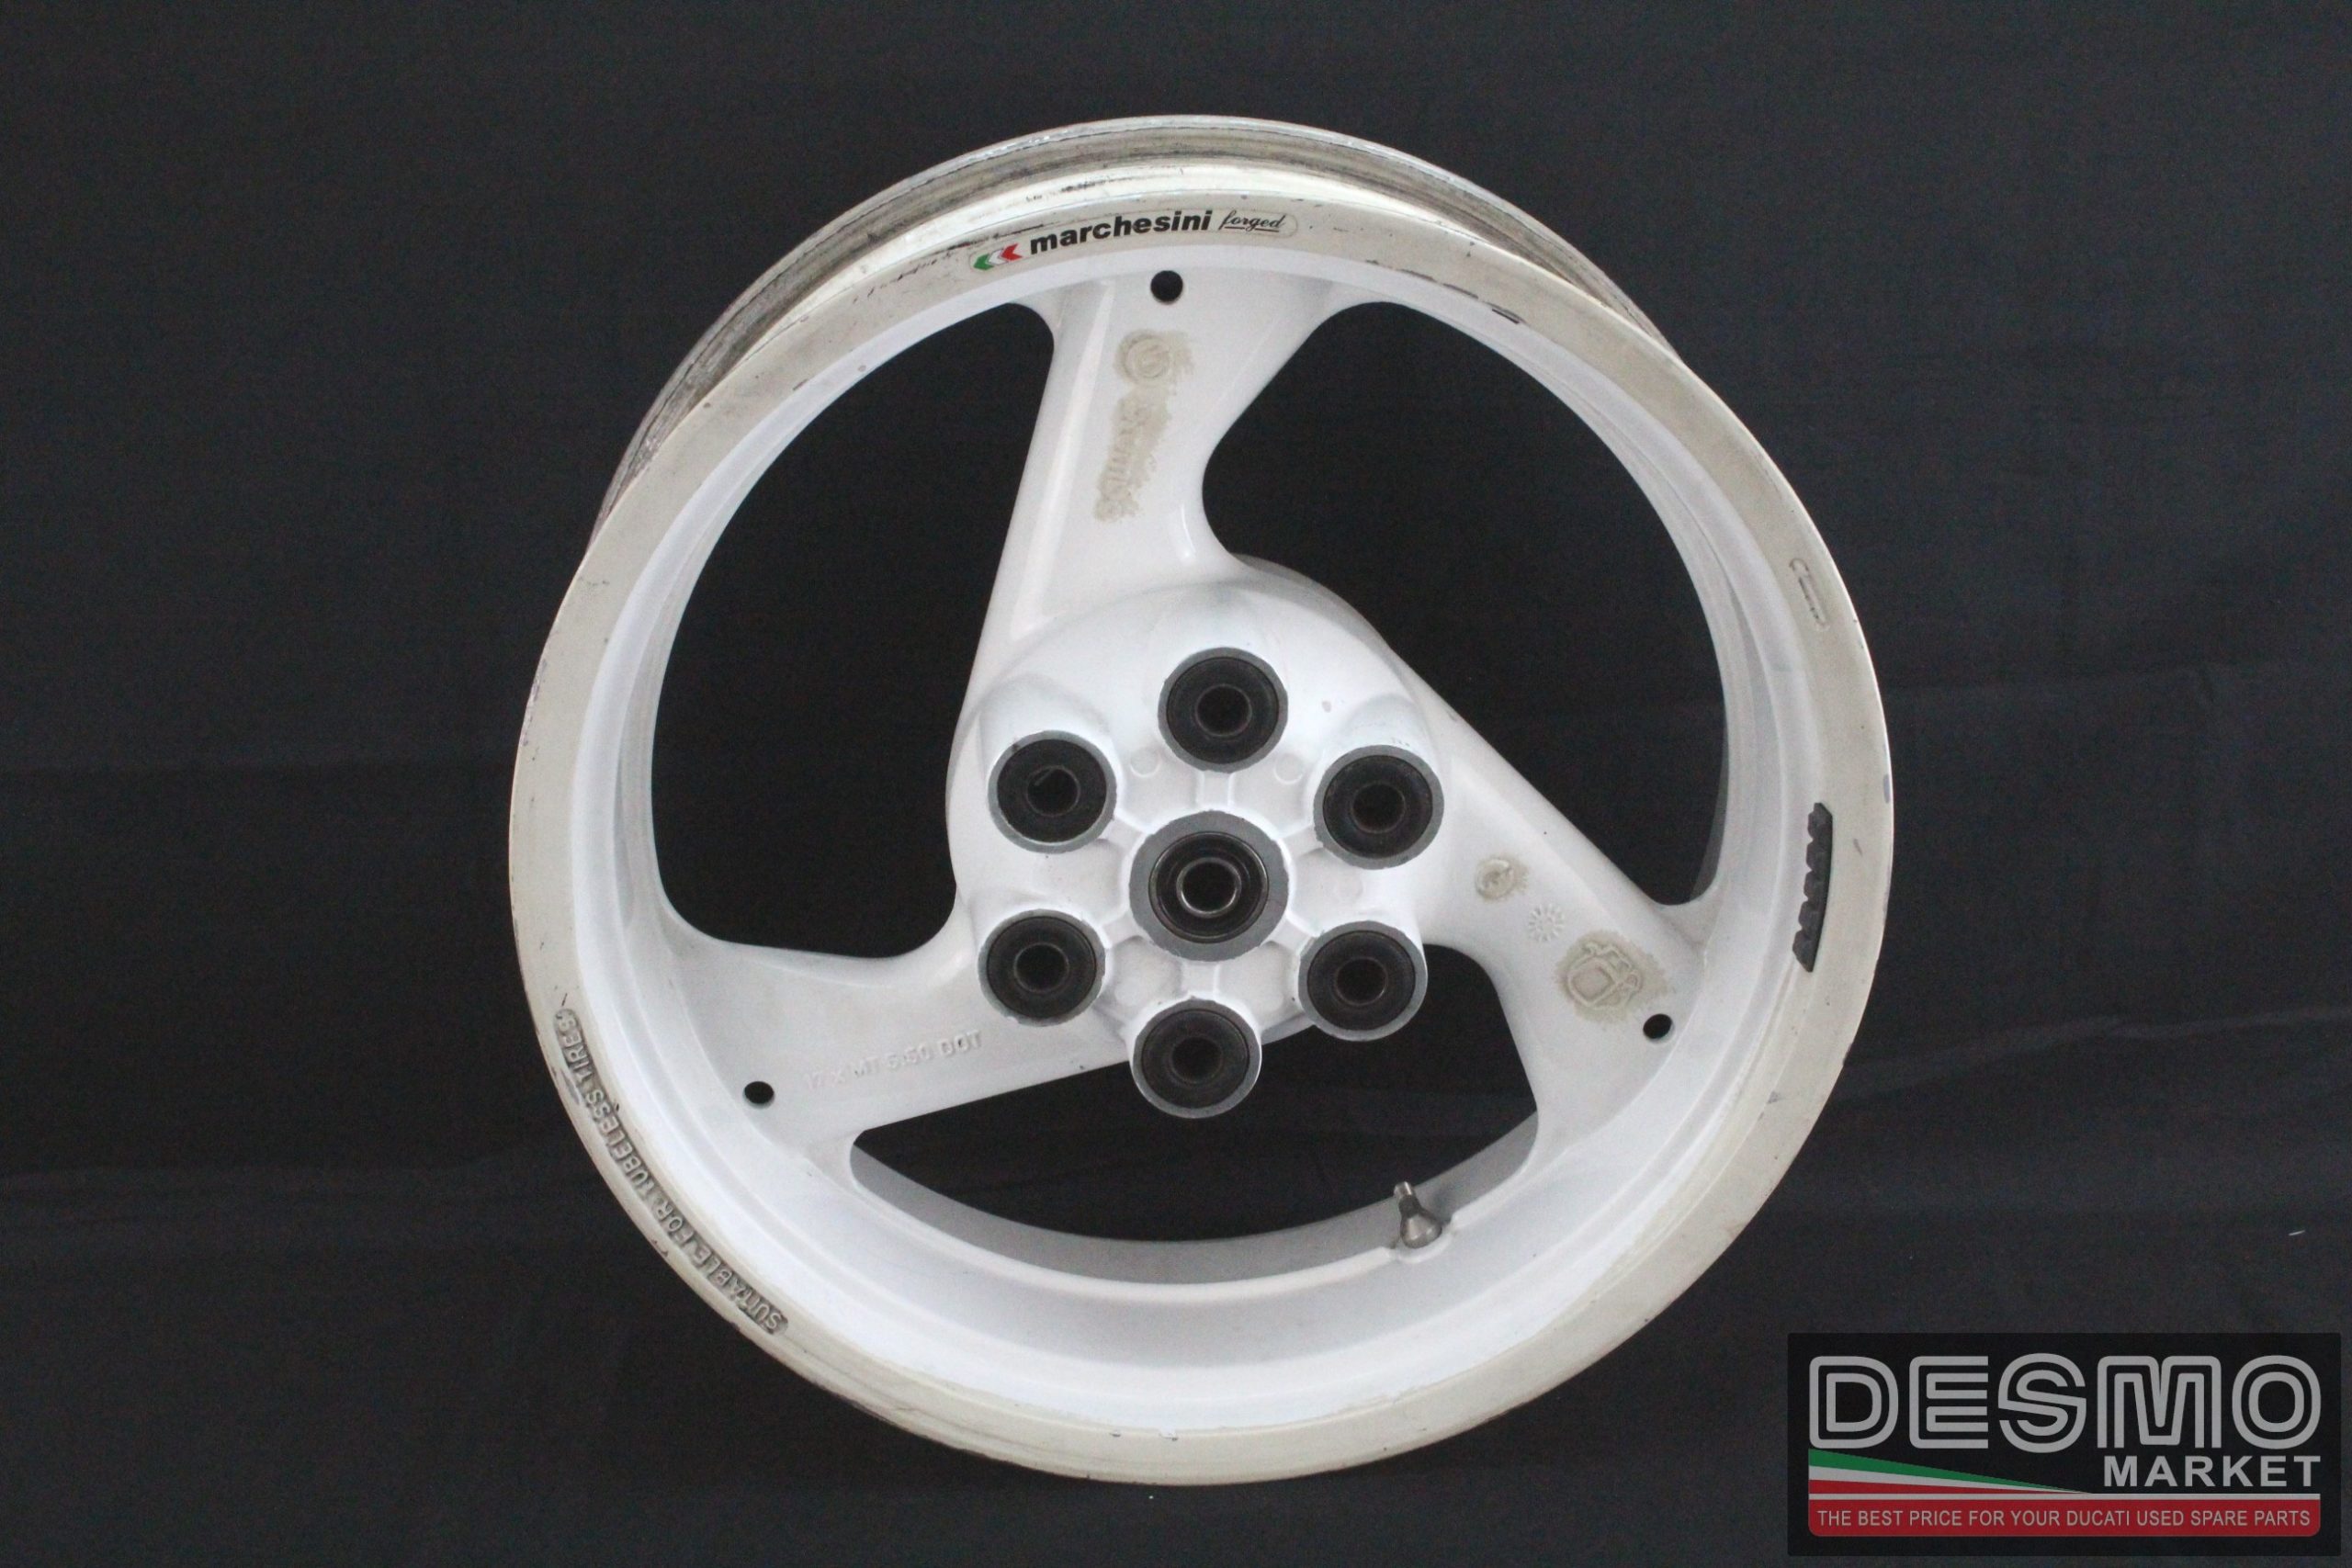 Cerchio posteriore Brembo bianco tre razze 17 x 5,5 Ducati 851 888